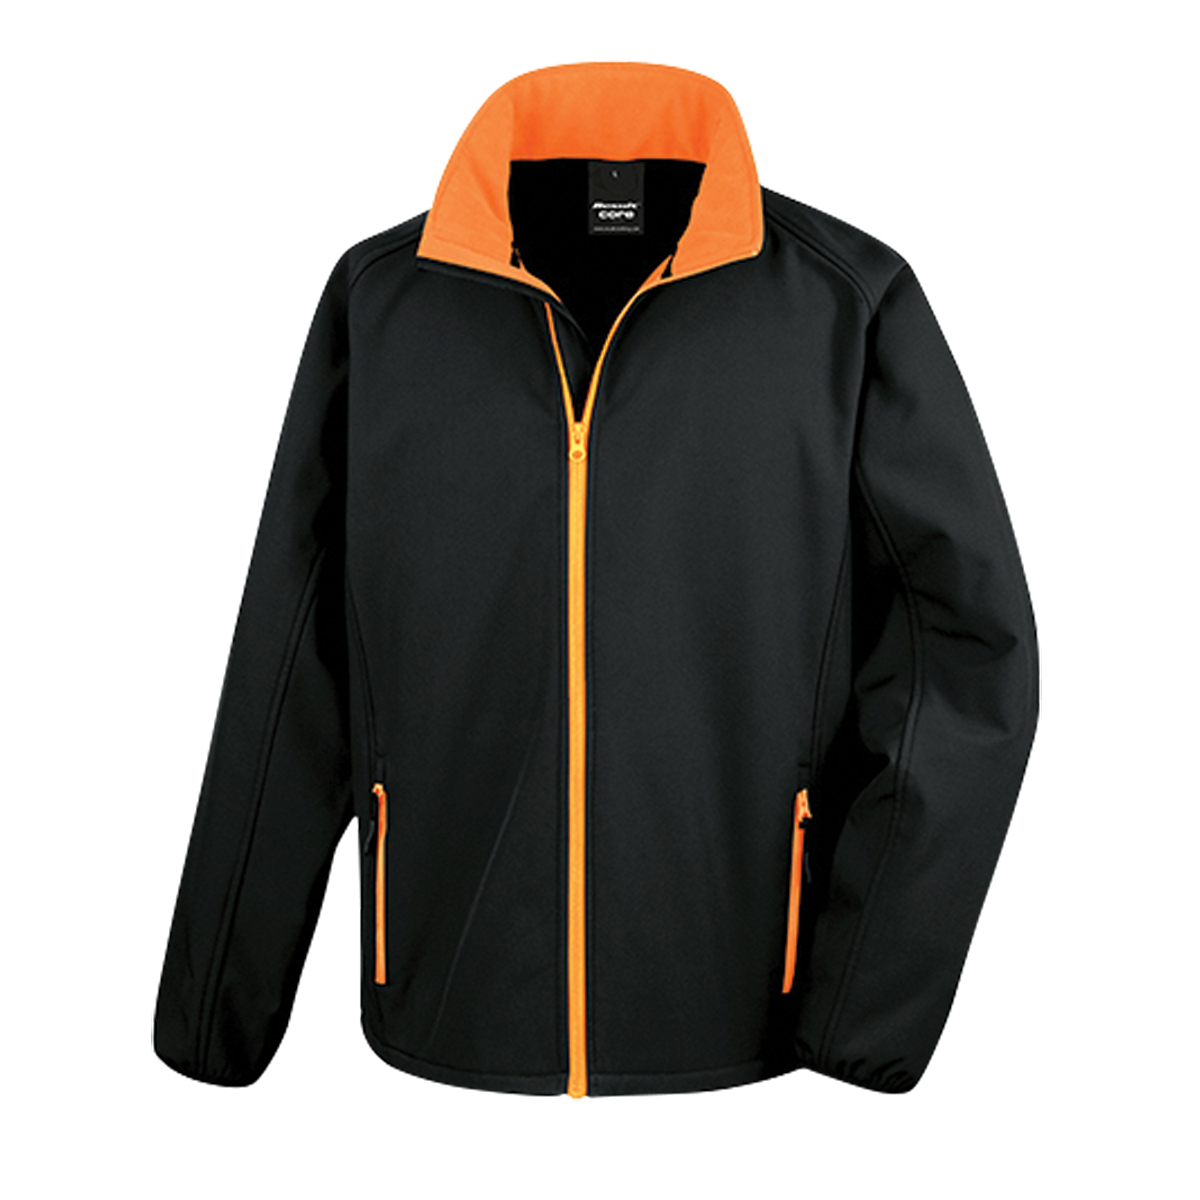 Softshellová pánská bunda Alex Fox Nebraska - černá-oranžová, XL